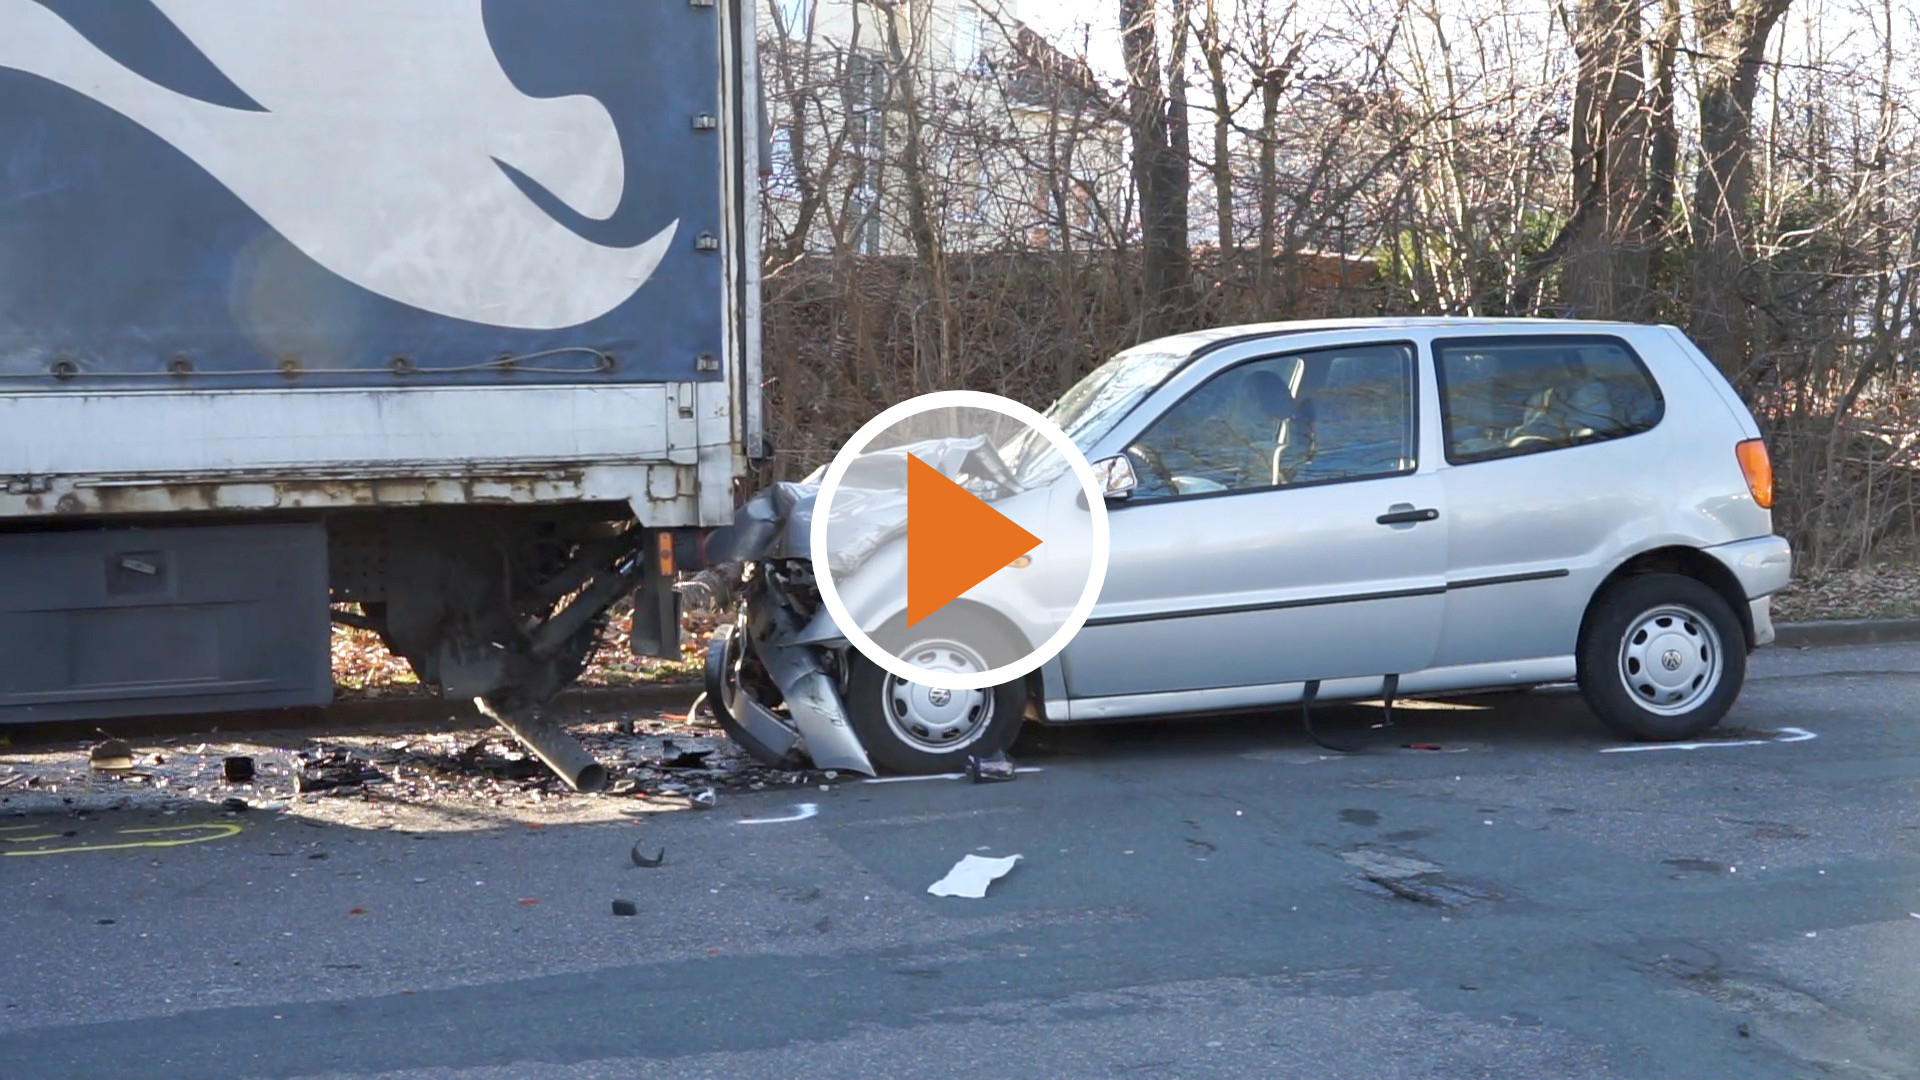 Screen_Toedlicher Verkehrsunfall in Osnabrueck